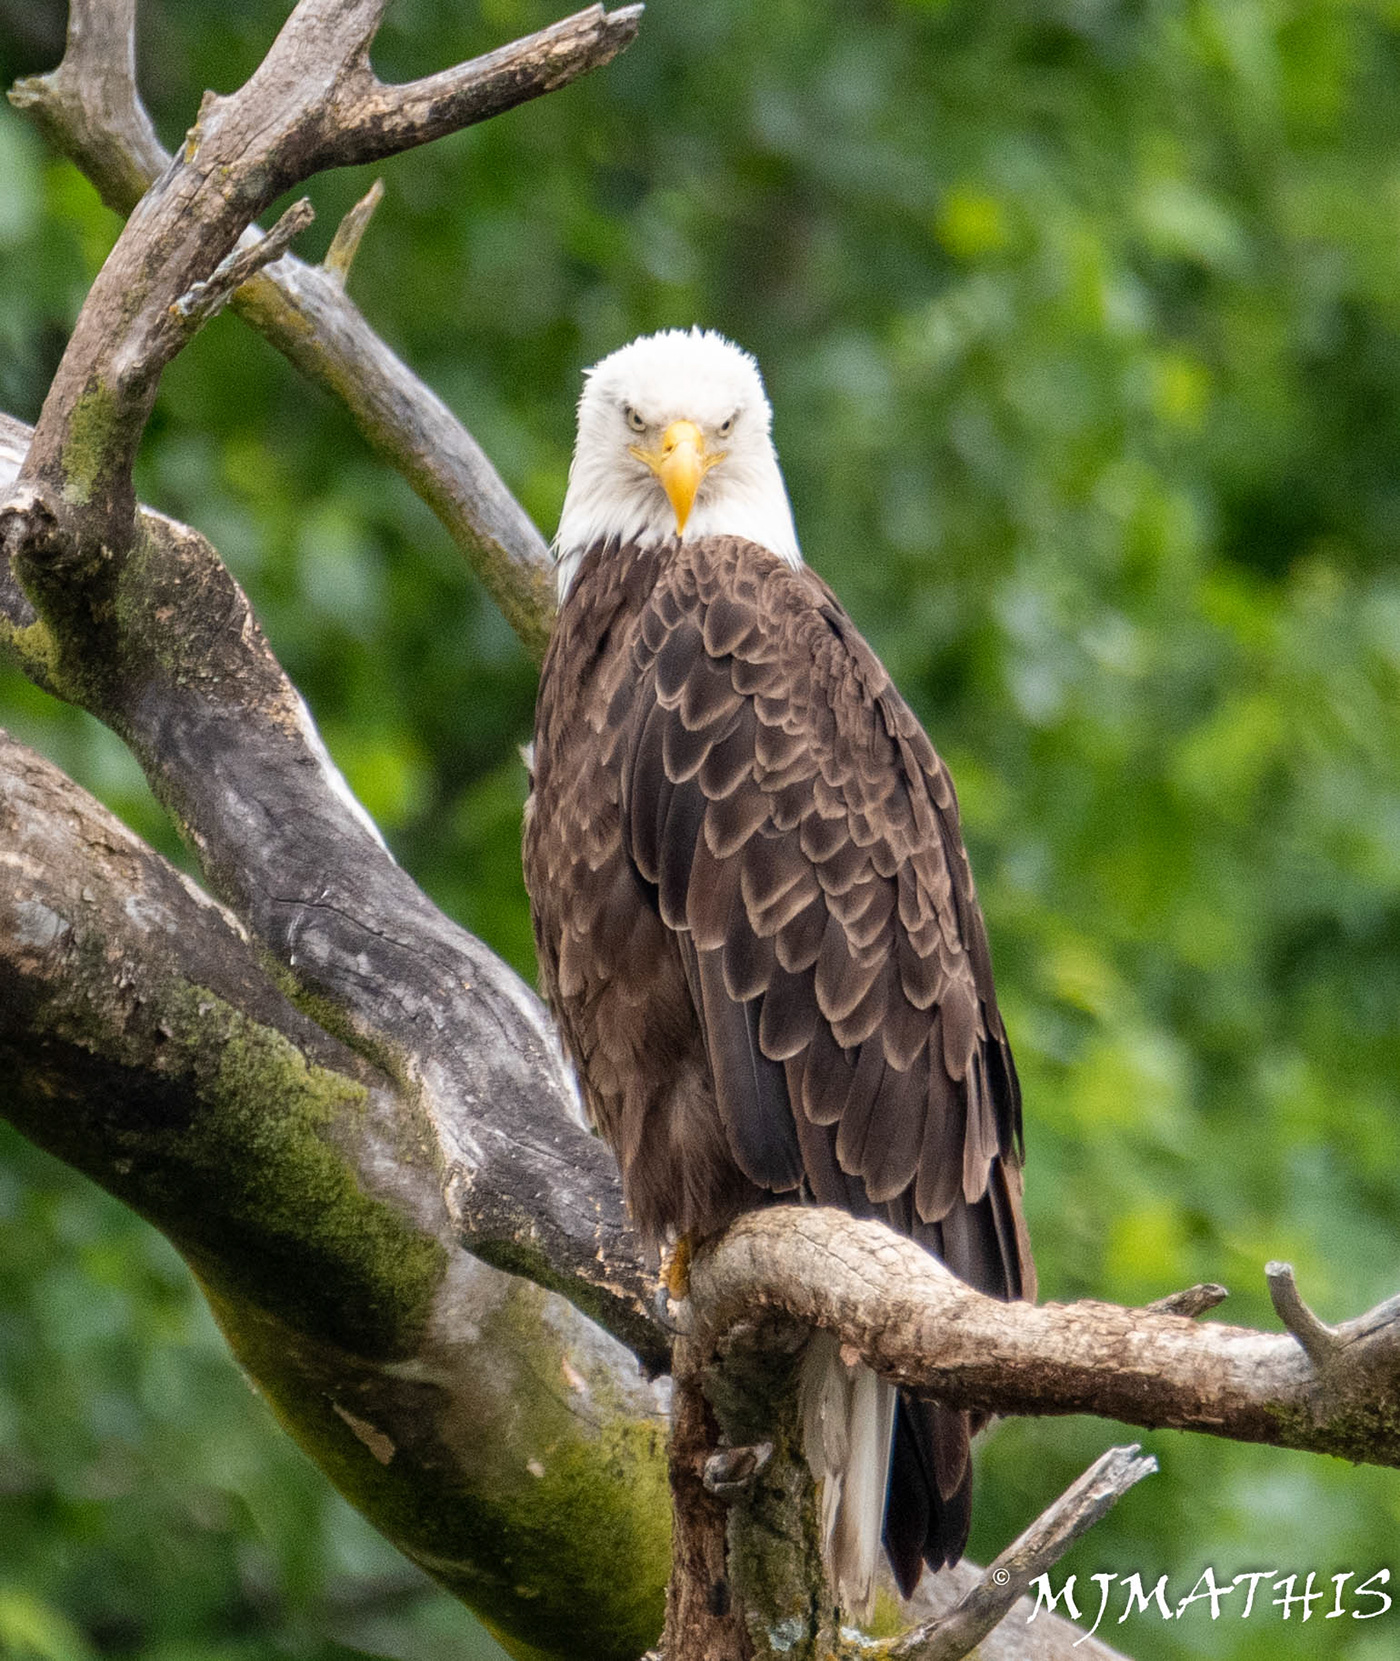 bald eagle eagle raptor birds Wildlife photography nature photography Ecology Photography